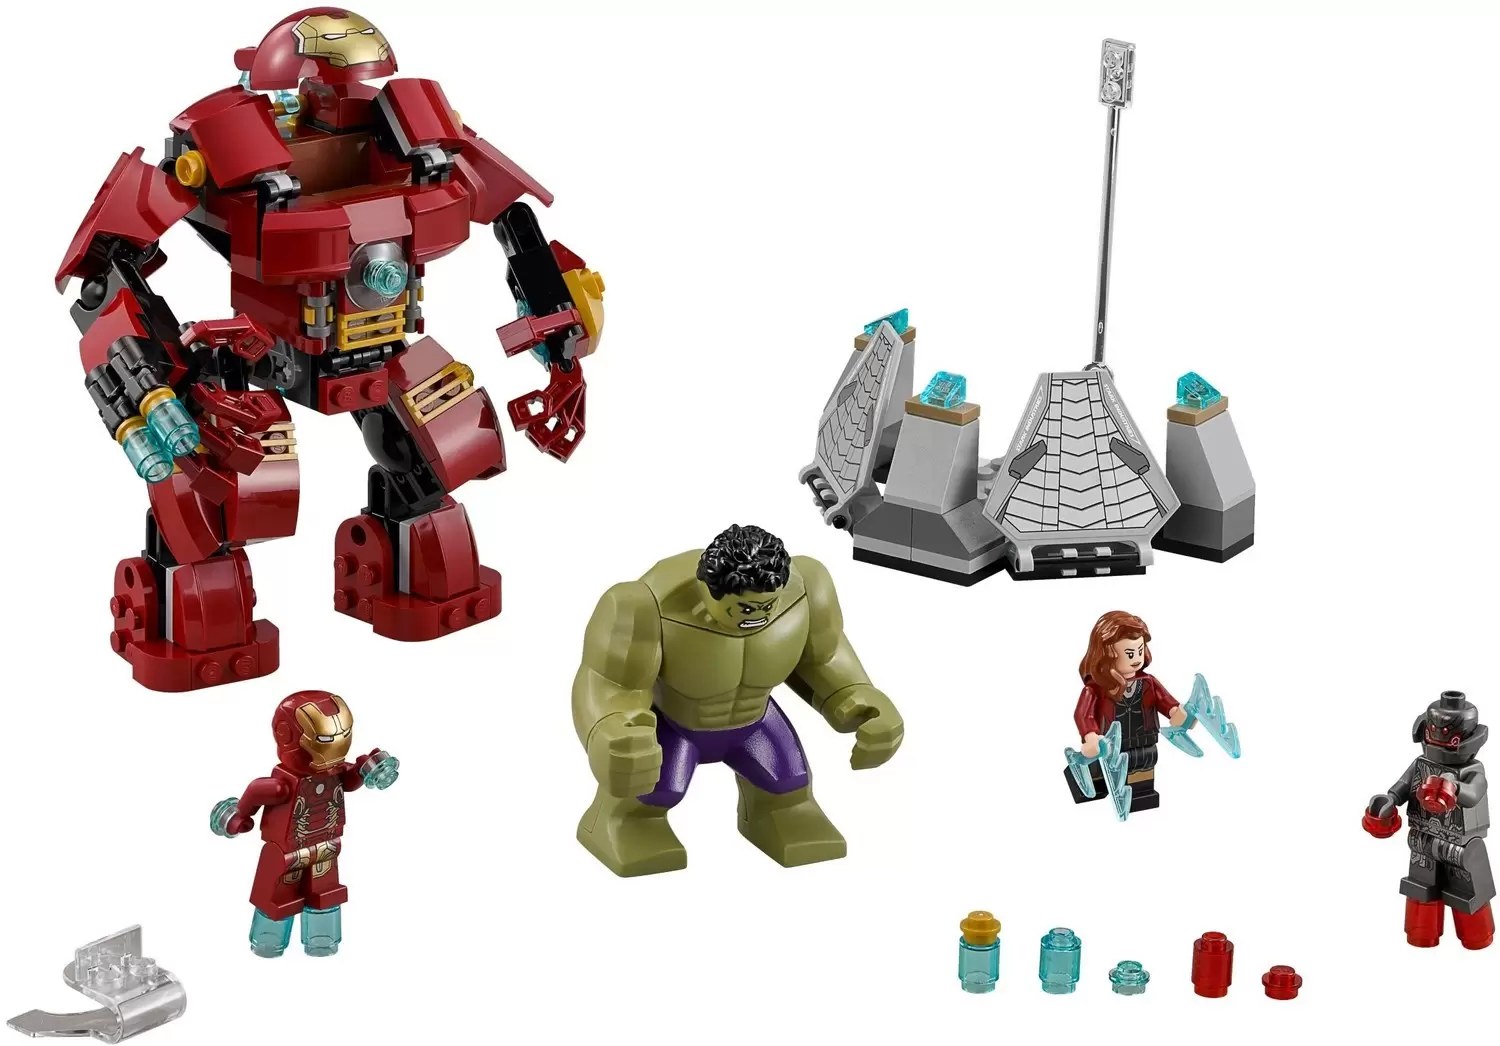 LEGO MARVEL Super Heroes - The Hulk Buster Smash